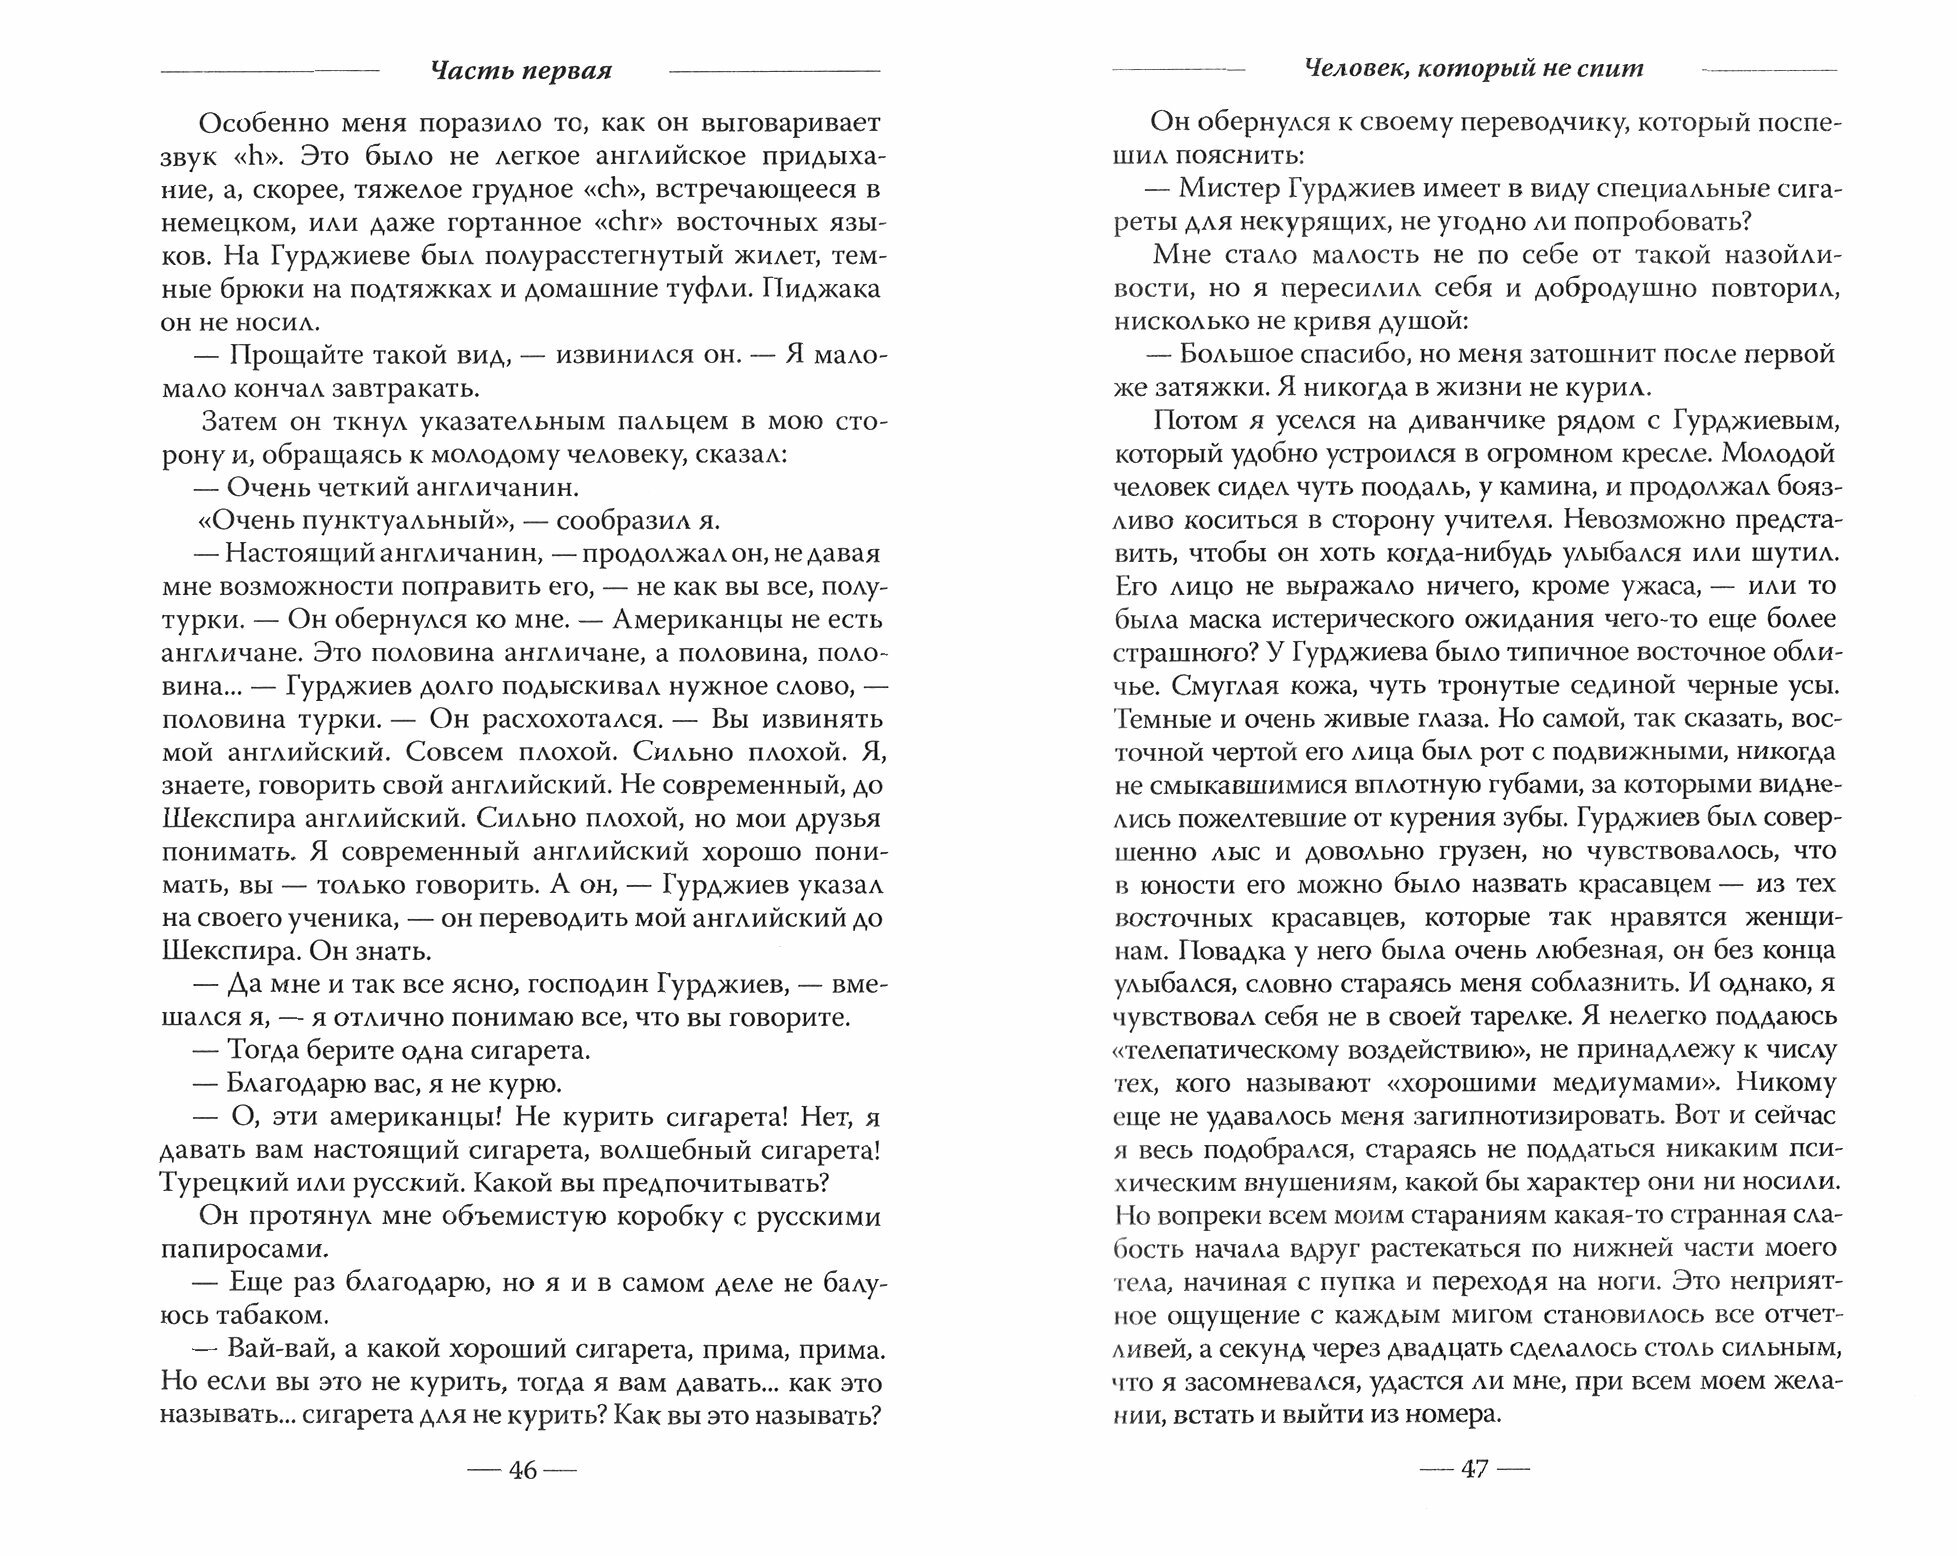 Мсье Гурджиев: Документы, свидетельства, тексты и комментарии - фото №4